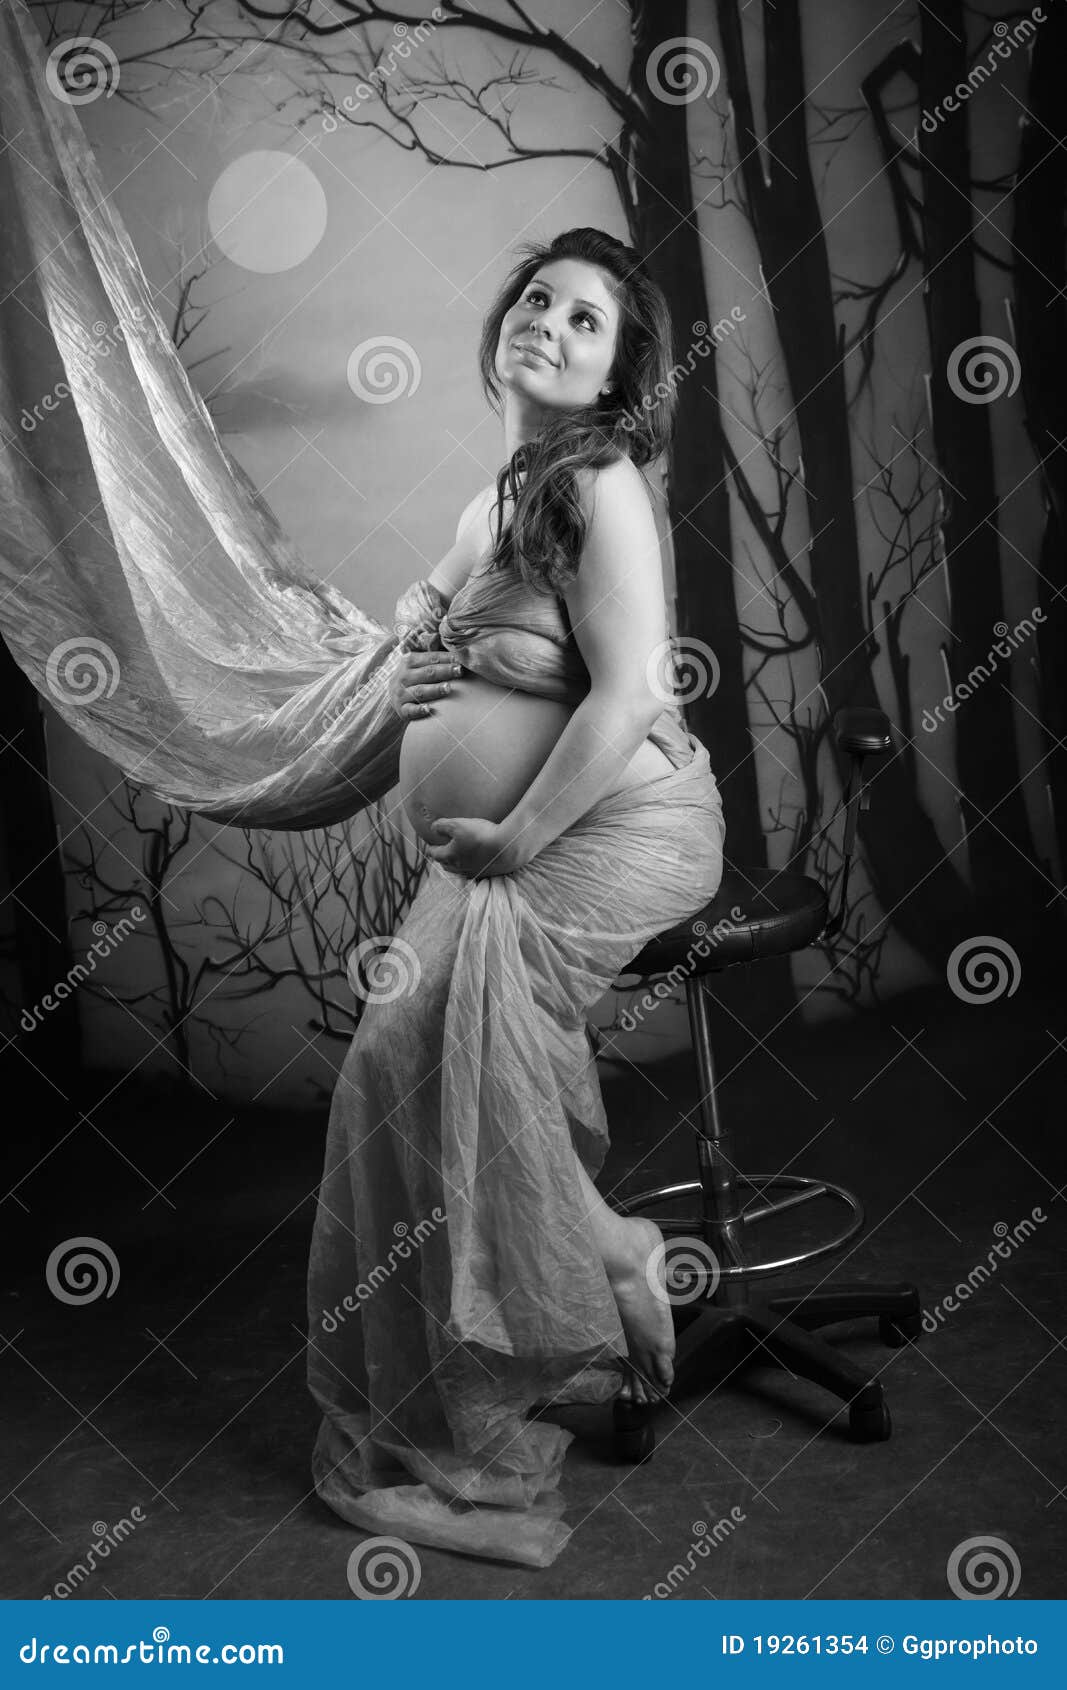 MOON NIGHT - Página 19 Retrato-de-una-mujer-embarazada-en-blanco-y-negro-19261354